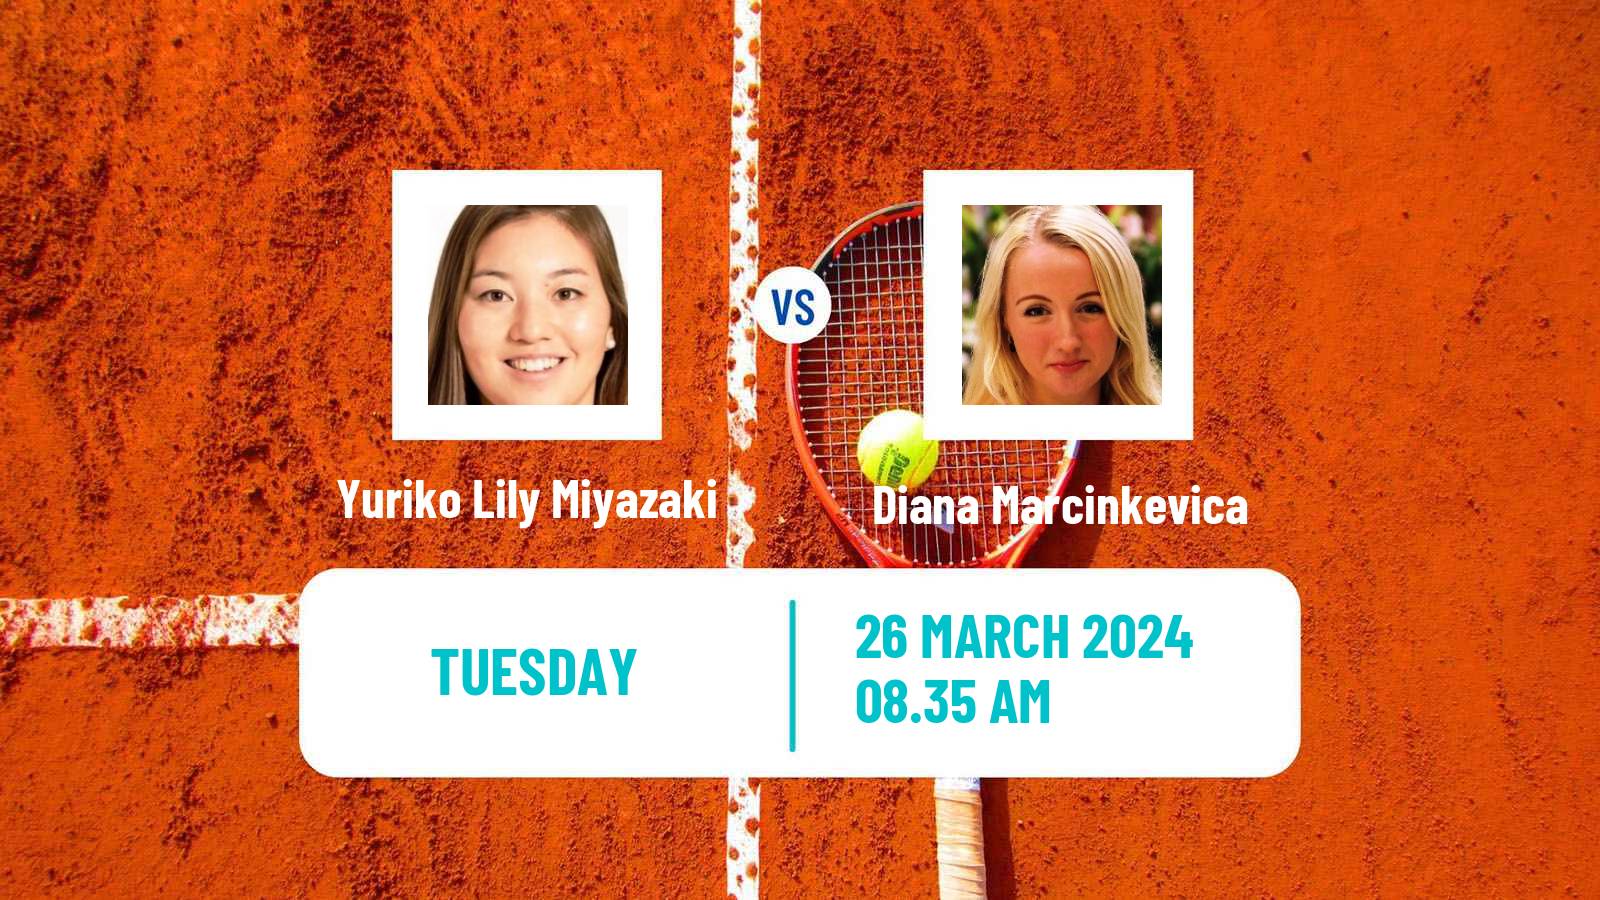 Tennis ITF W75 Croissy Beaubourg Women Yuriko Lily Miyazaki - Diana Marcinkevica